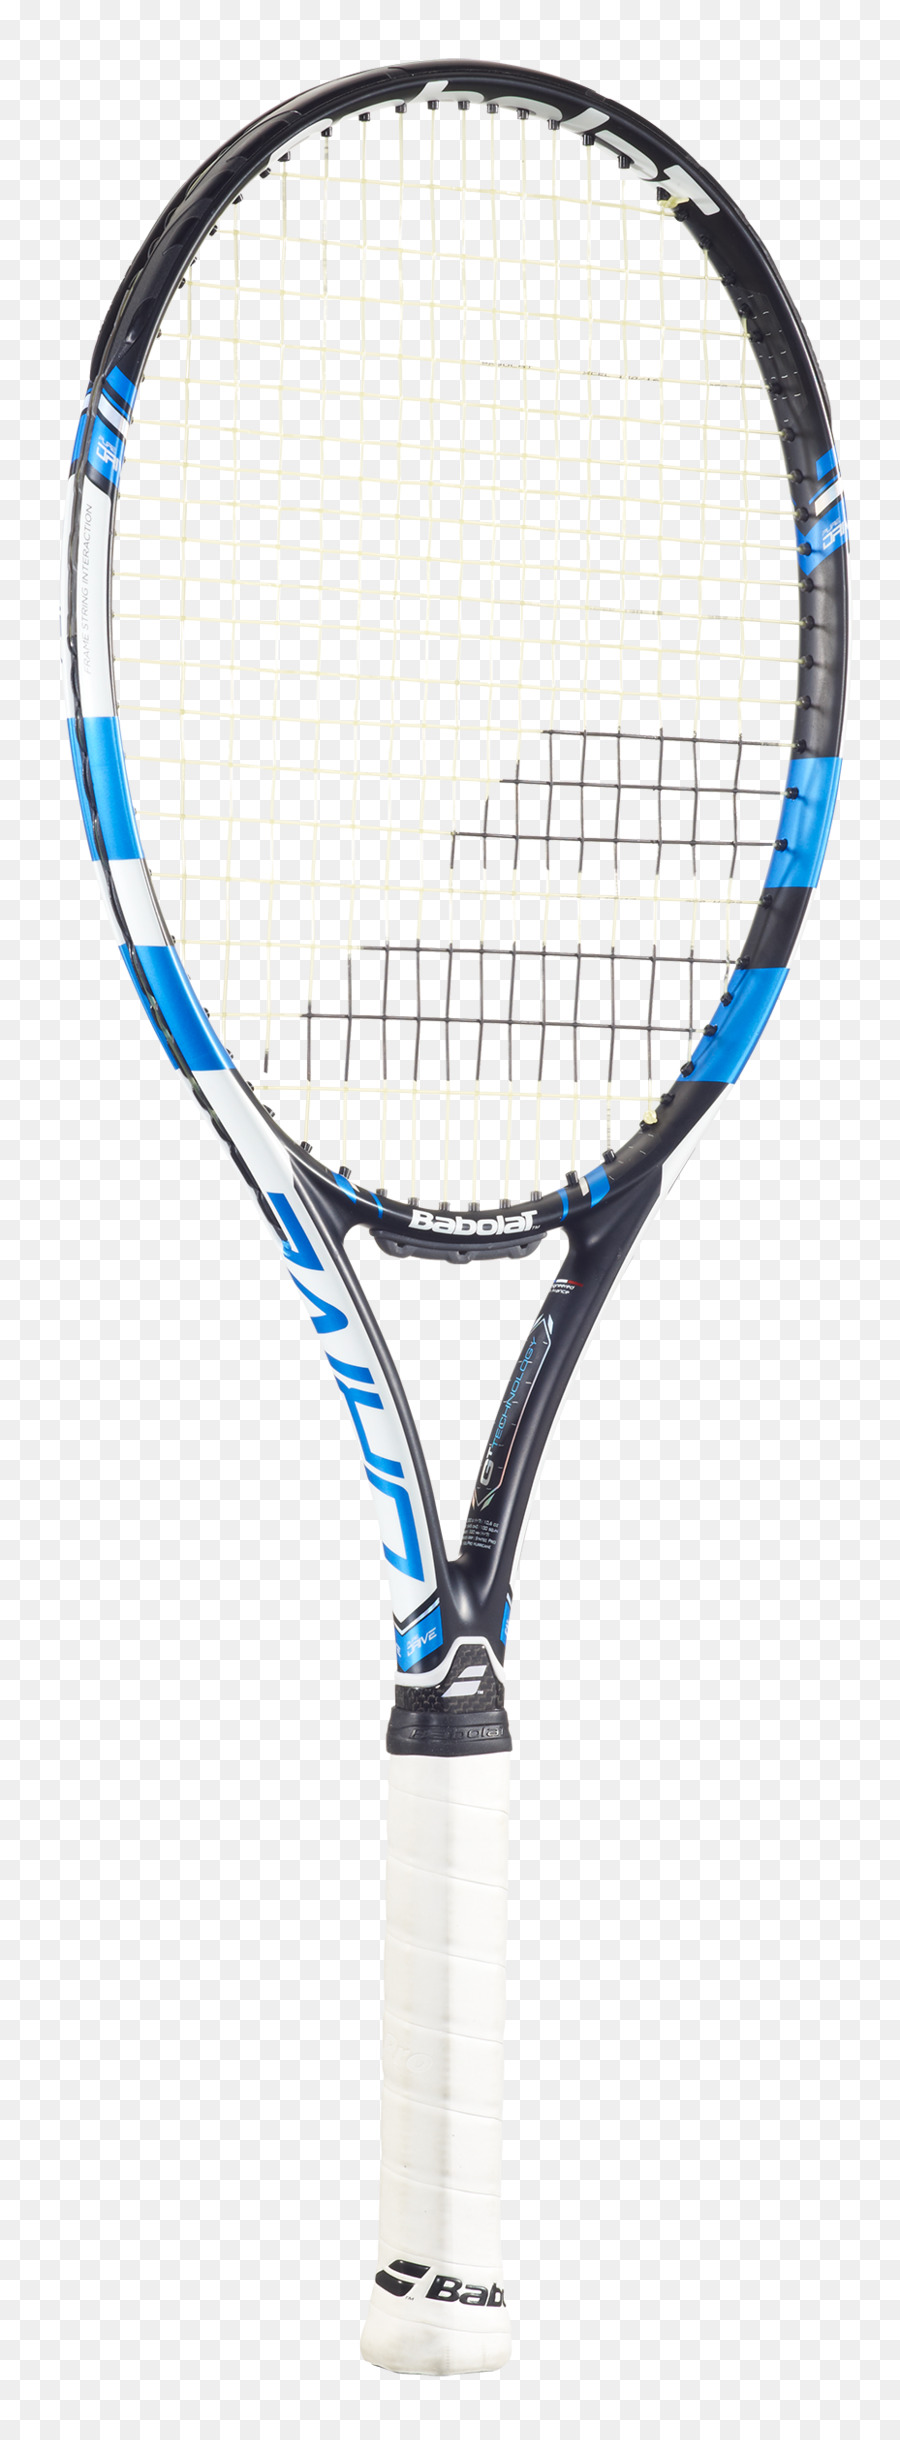 Babolat 2018 Pure Drive Plus Racchetta Da Tennis, Racchette Da Tennis - Babolat Pure Strike 16/19 Racchetta Da Tennis - pong